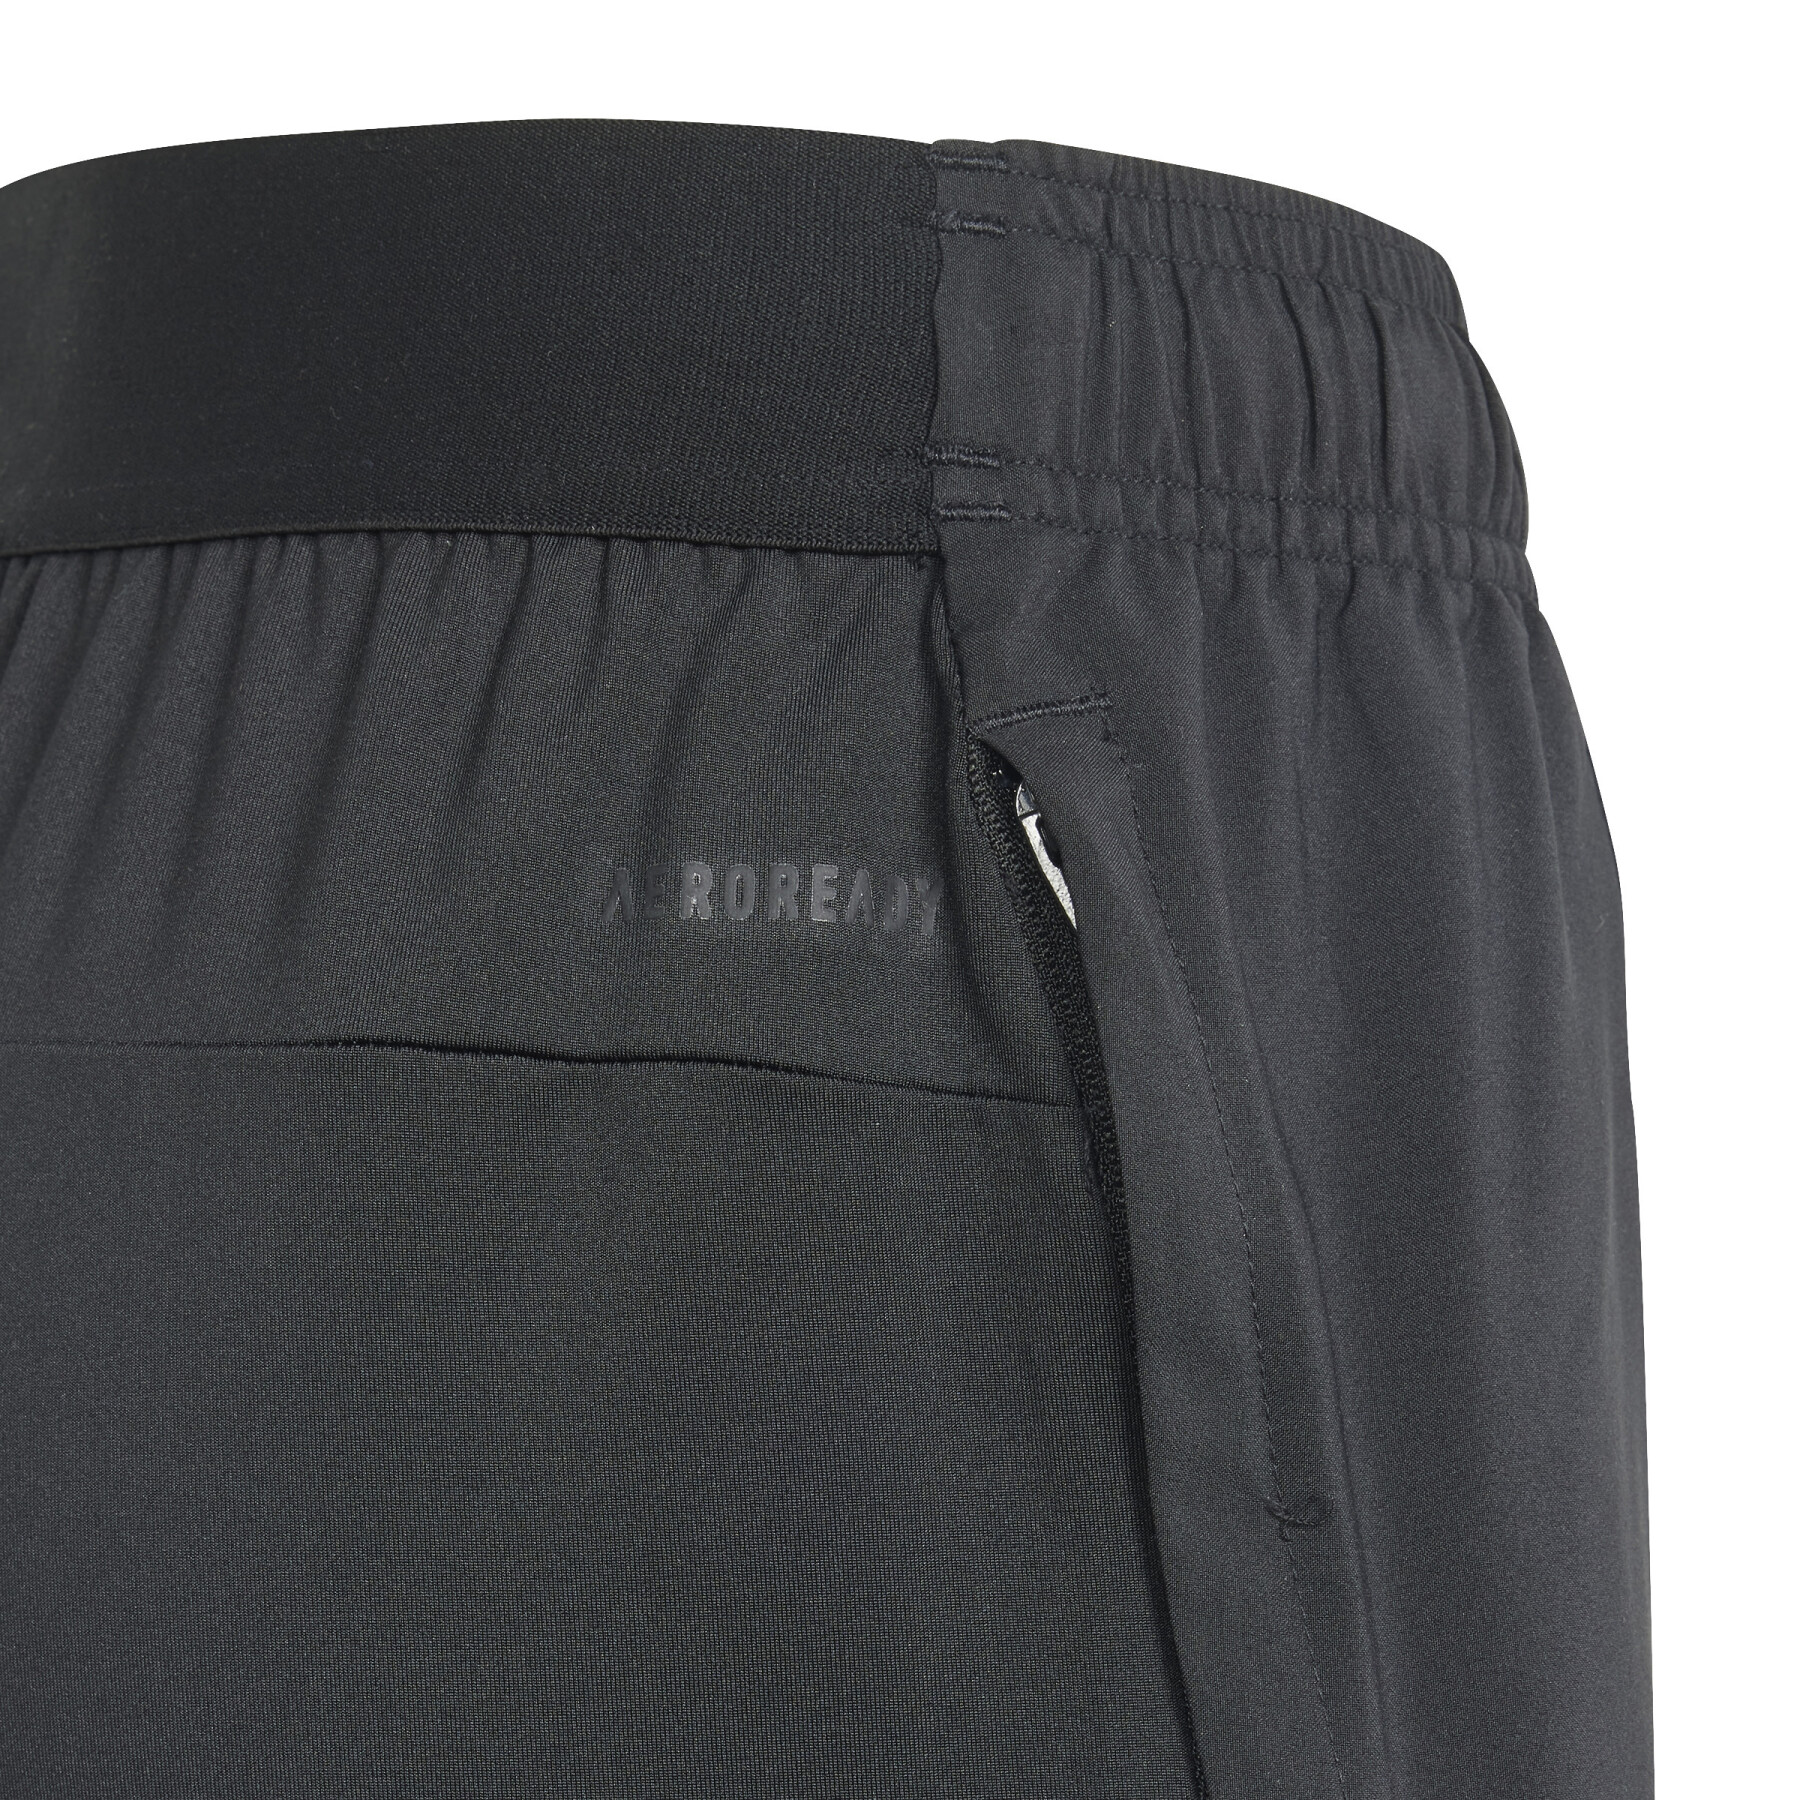 Pantalones cortos para niños adidas Aeroready